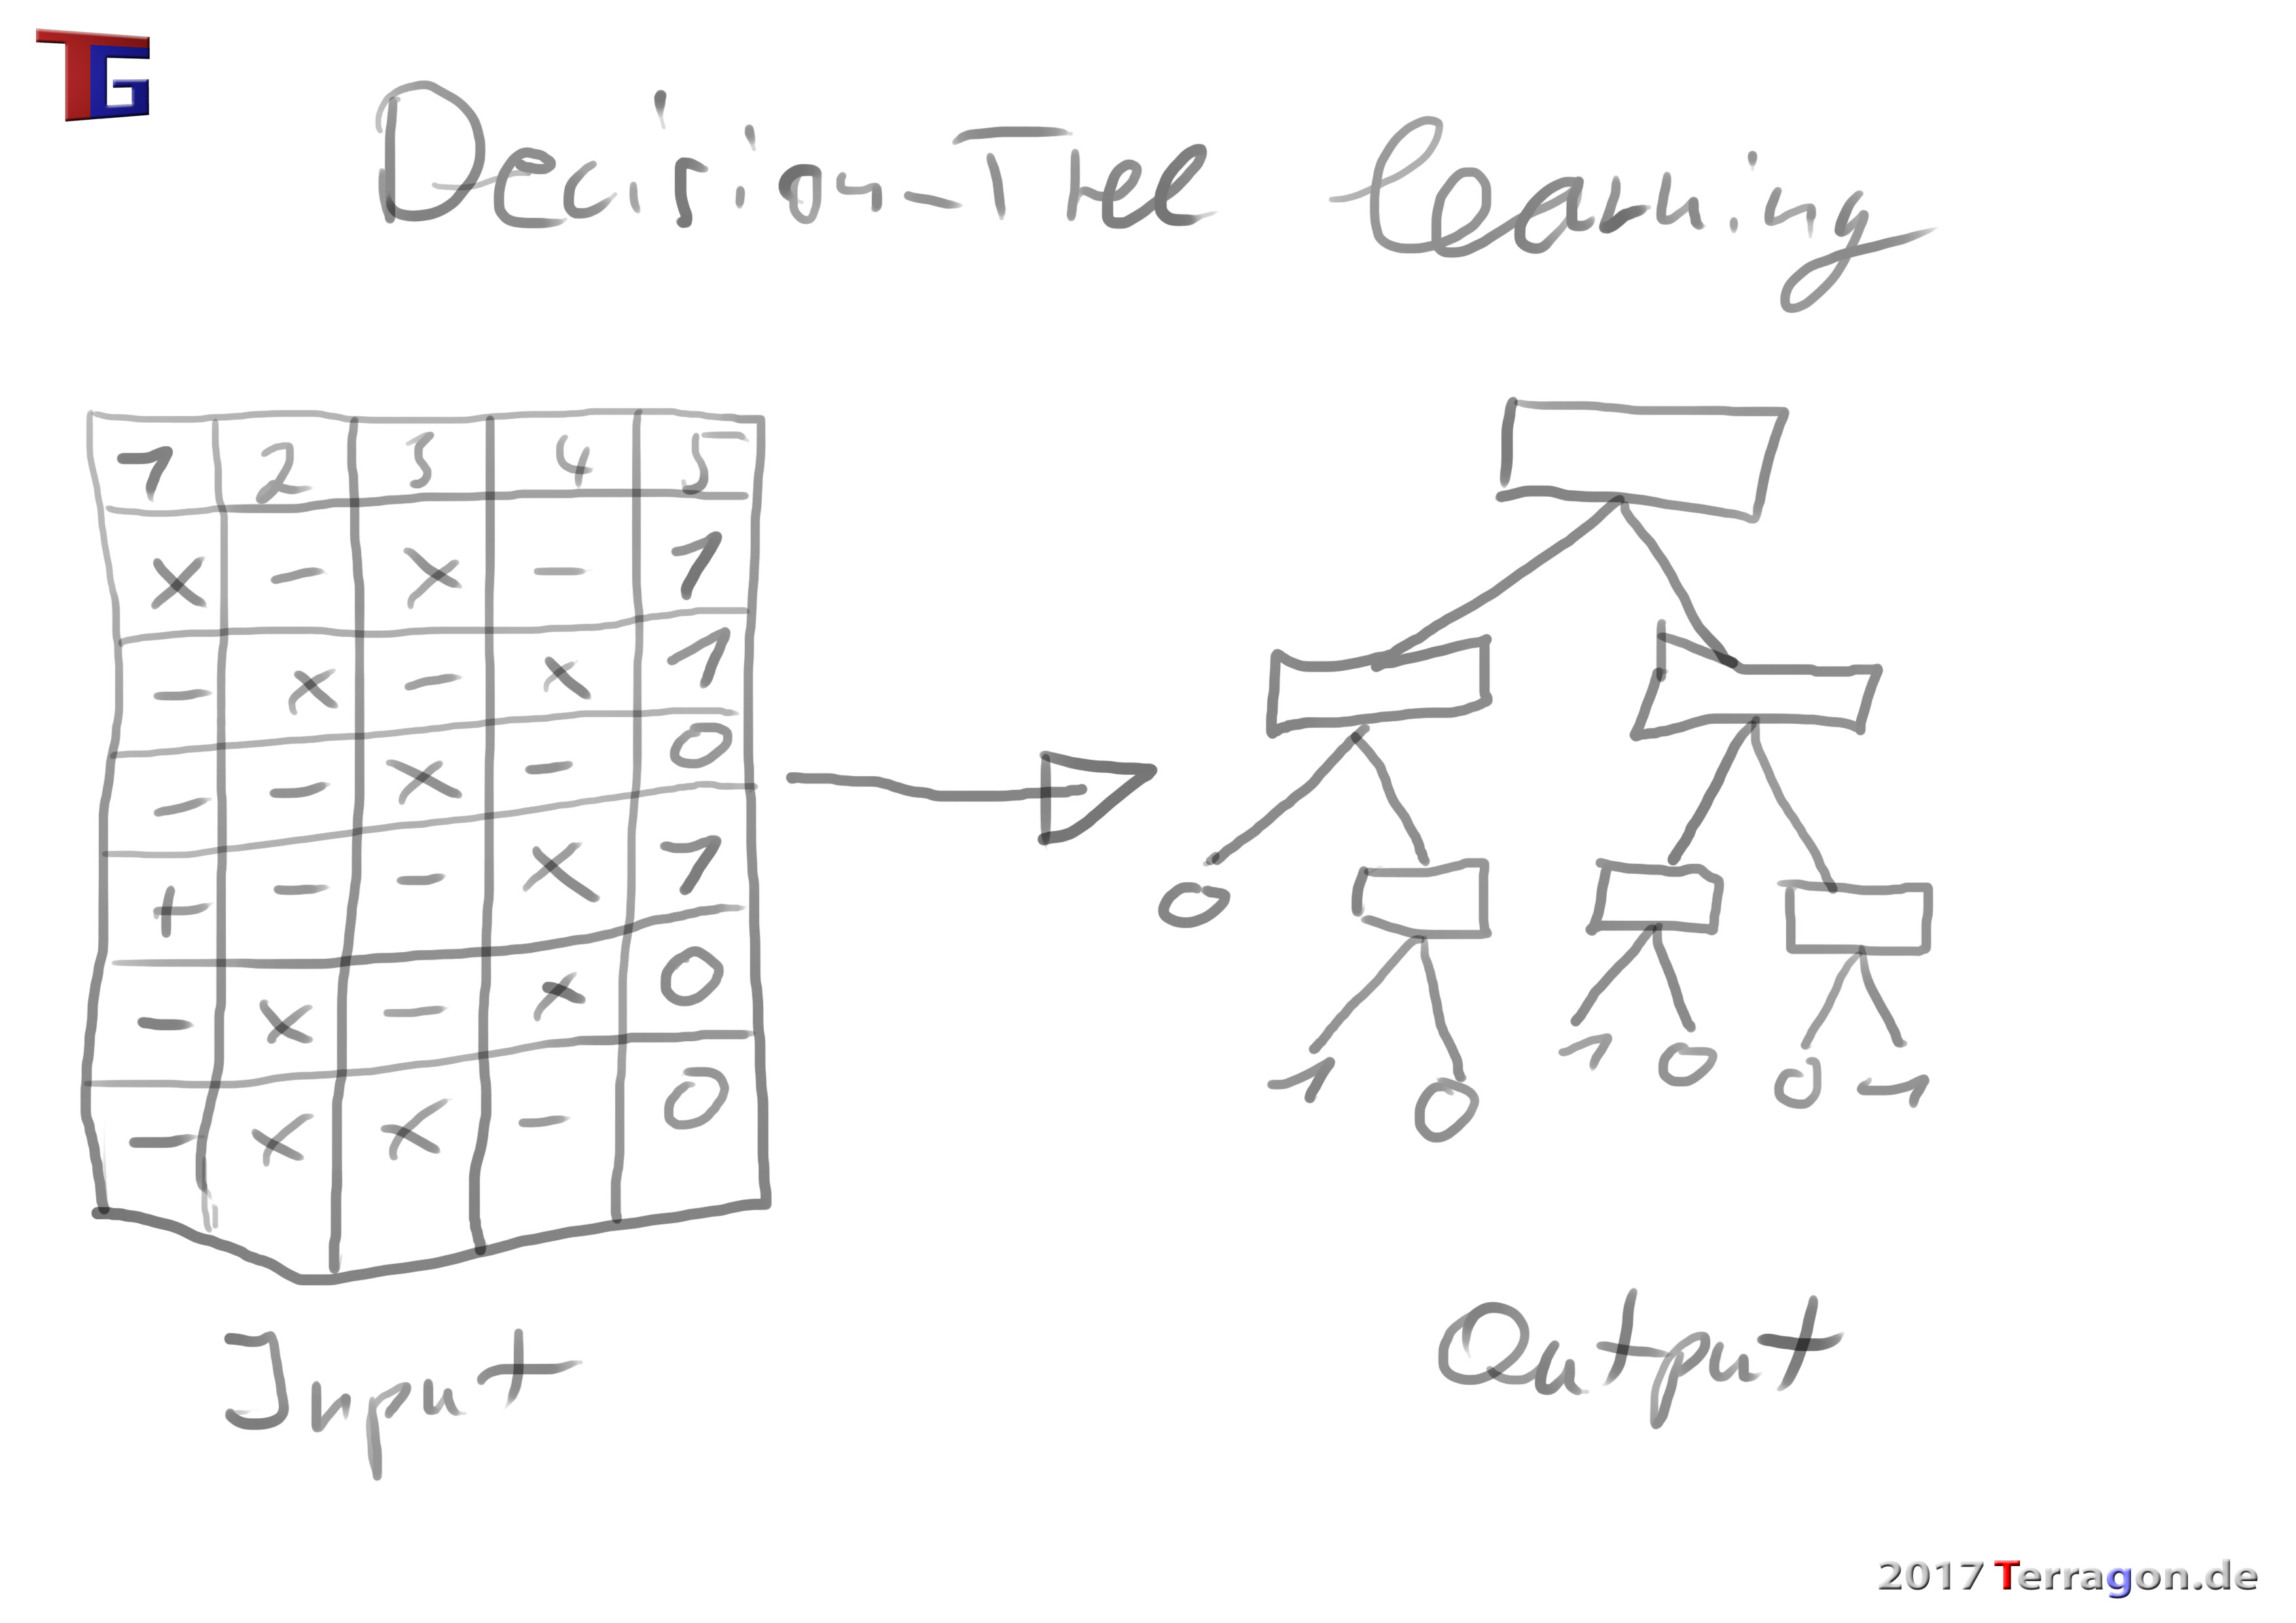 Bei dern Lern-Methode Decision-Tree learning wird anhand von vergangenen Fallbeispielen (z.B. in Tabellenform) ein Entscheidungsbaum generiert, mit dem zukünftige Entscheidungen getroffen werden können sollen.